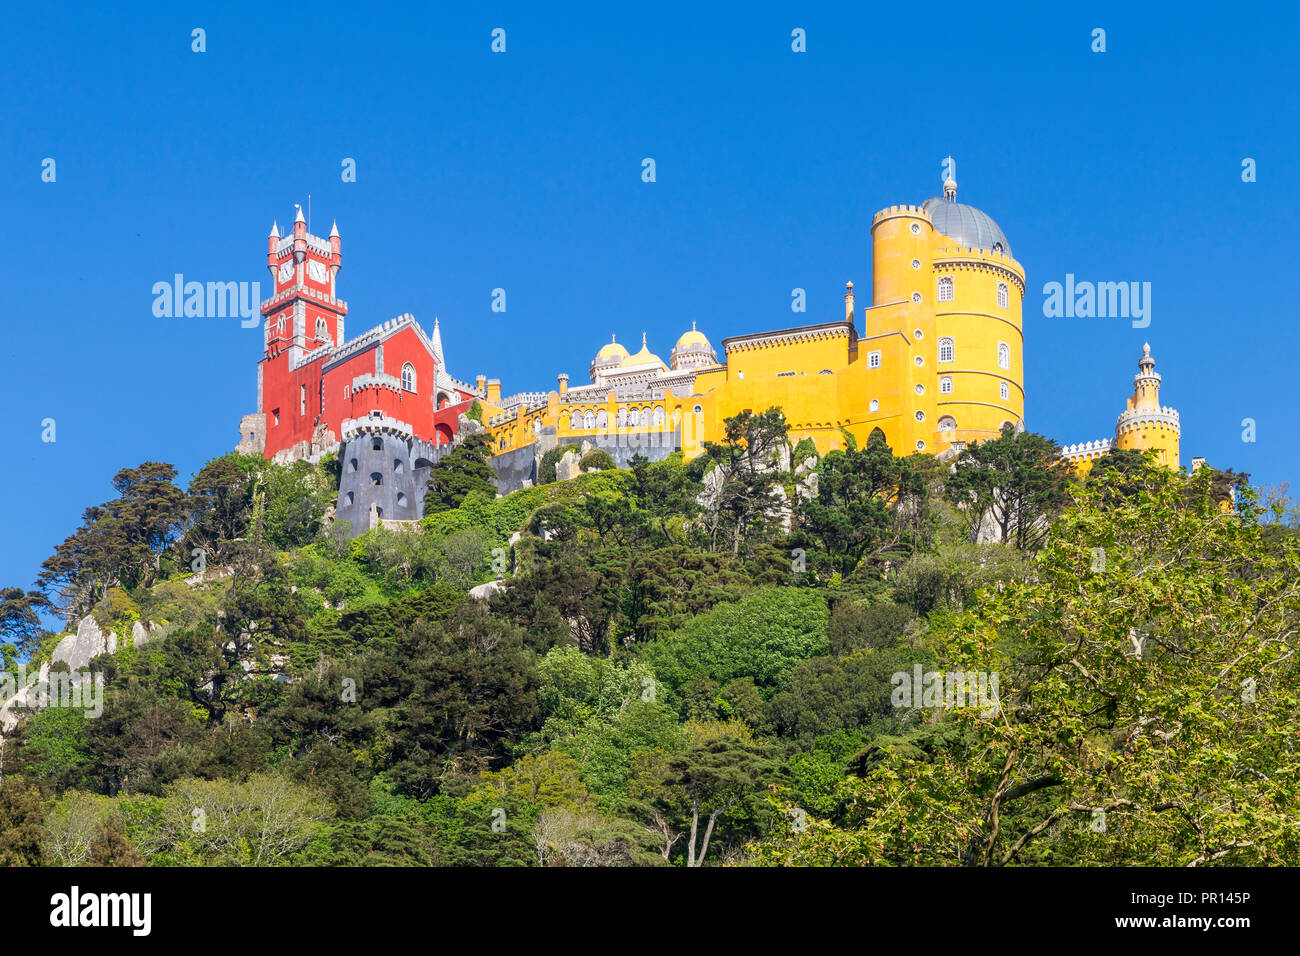 Le palais de Pena, UNESCO World Heritage Site, près de Sintra, Portugal, Europe Banque D'Images